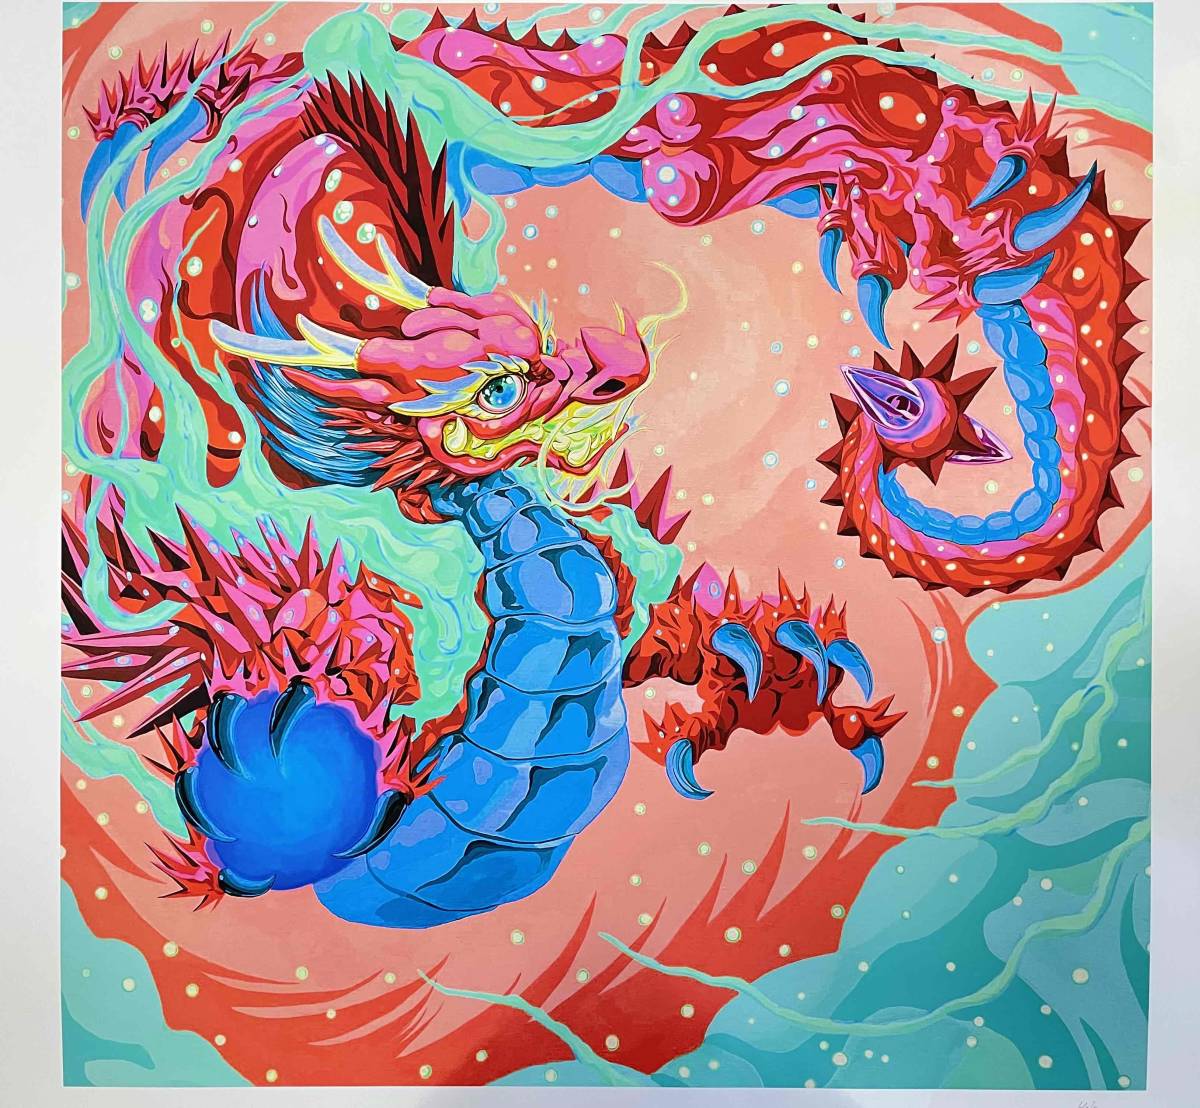 ☆ समकालीन स्याही चित्रकार ☆ कलाकार शिराडो पिंकी ड्रैगन (लाल) प्रिंट (गिक्ली प्रिंट) 50 प्रतियों तक सीमित हस्ताक्षरित समकालीन कला, कलाकृति, चित्रकारी, अन्य